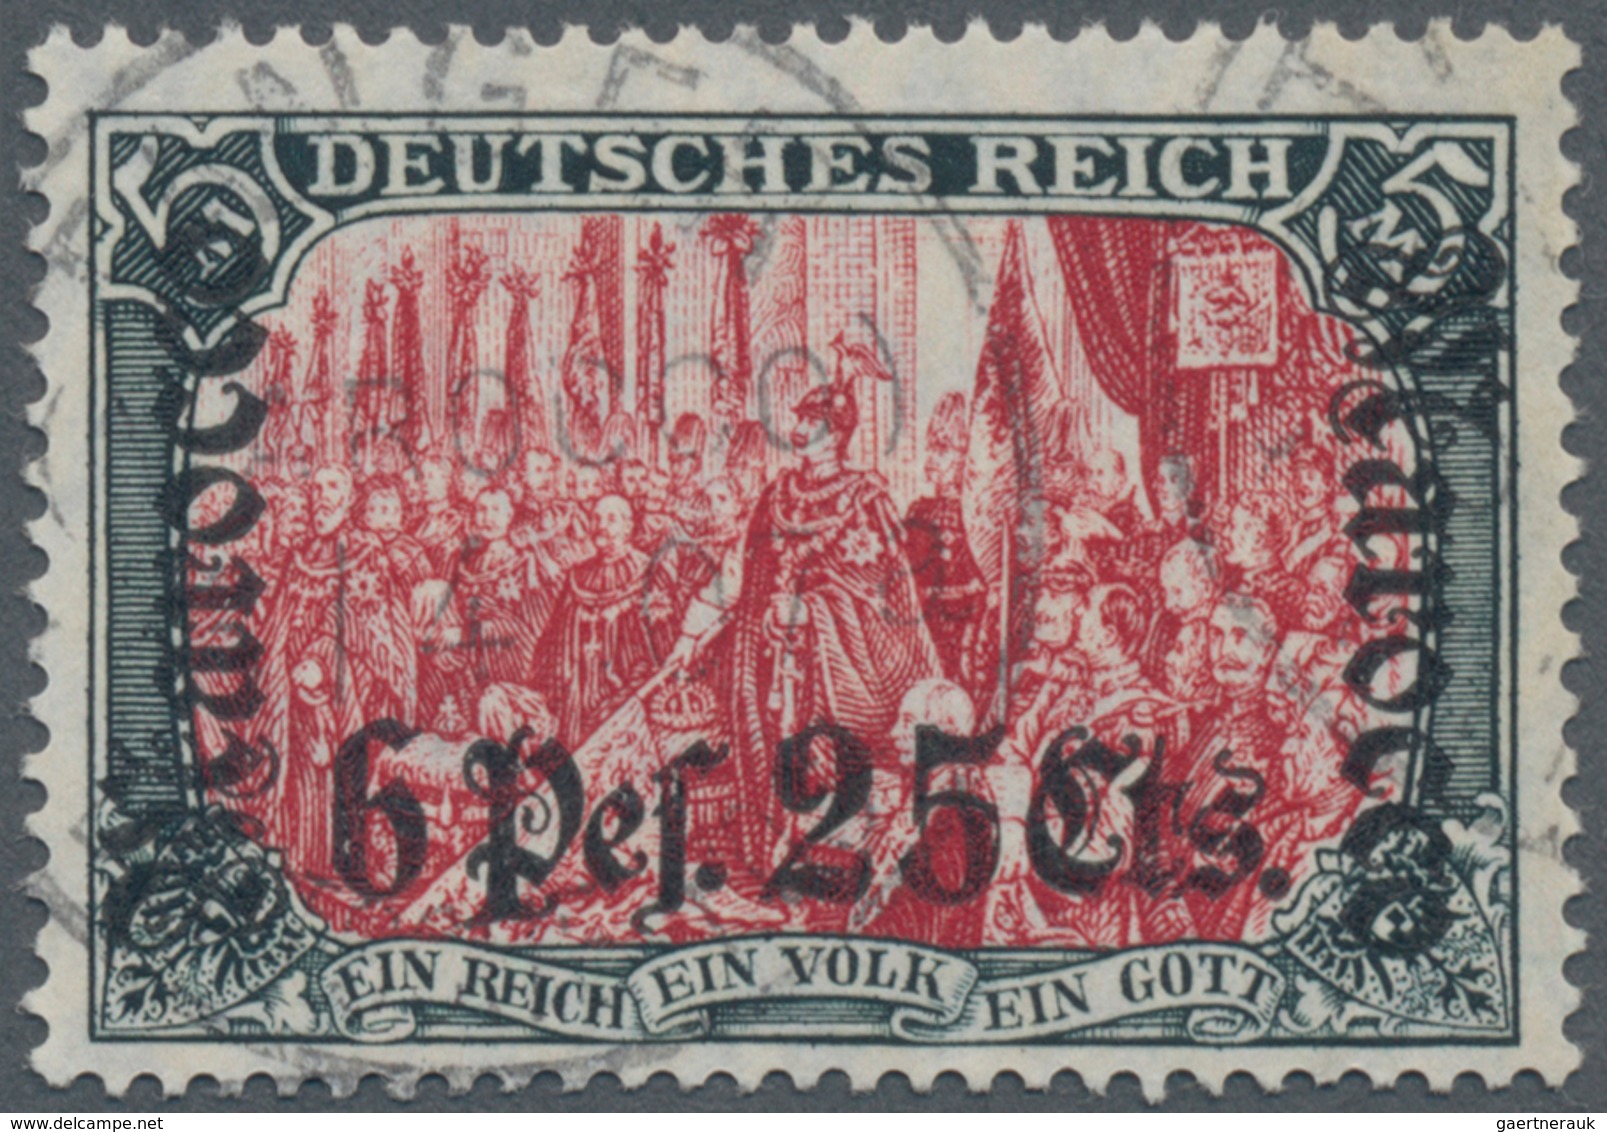 Deutsche Post In Marokko: 1906, 6 P 25 C Auf 5 M, Grünschwarz/dunkelkarmin, Gebraucht Mit Echtem Ste - Deutsche Post In Marokko